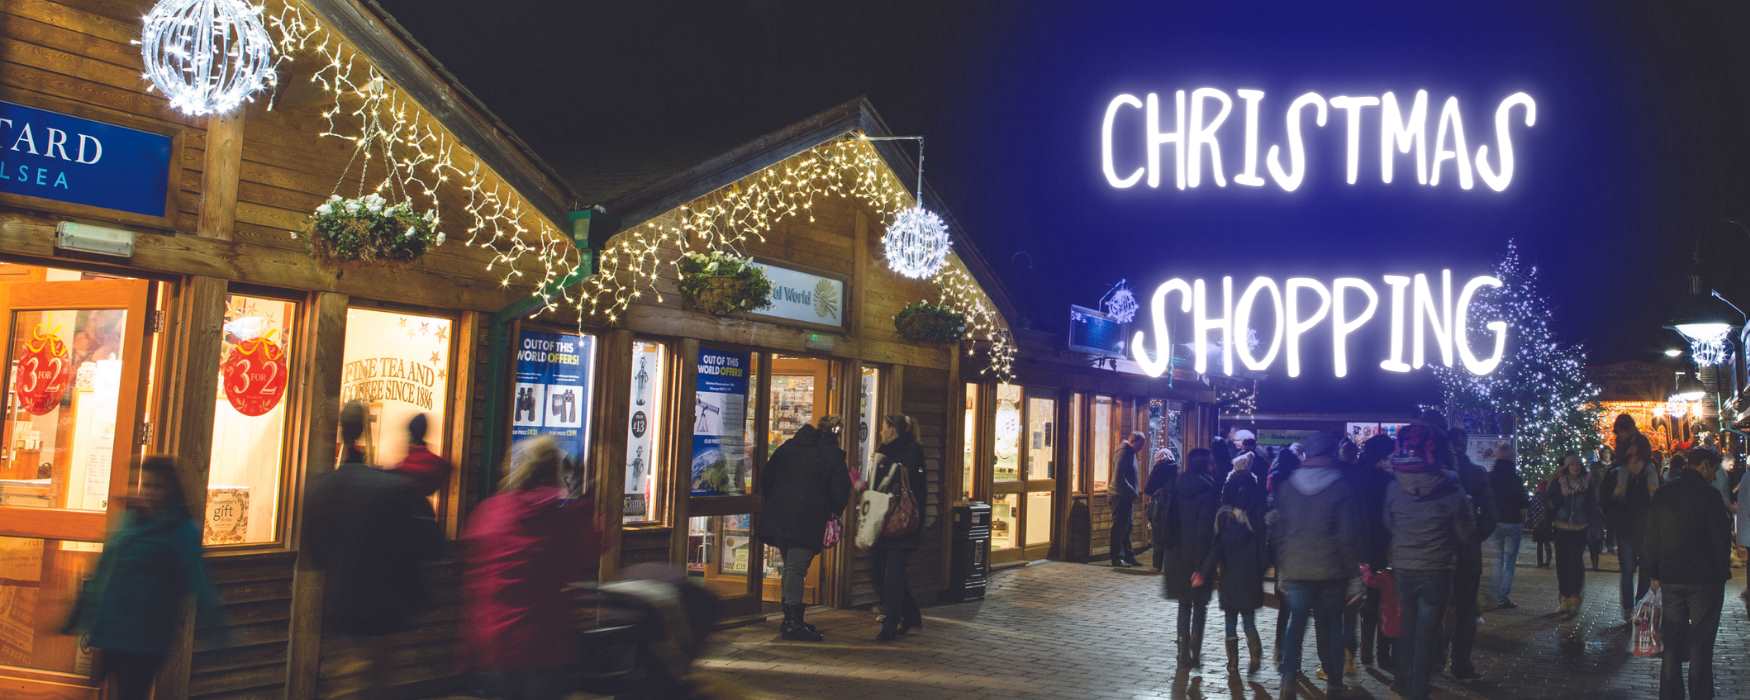 Christmas Shopping in Stoke-on-Trent